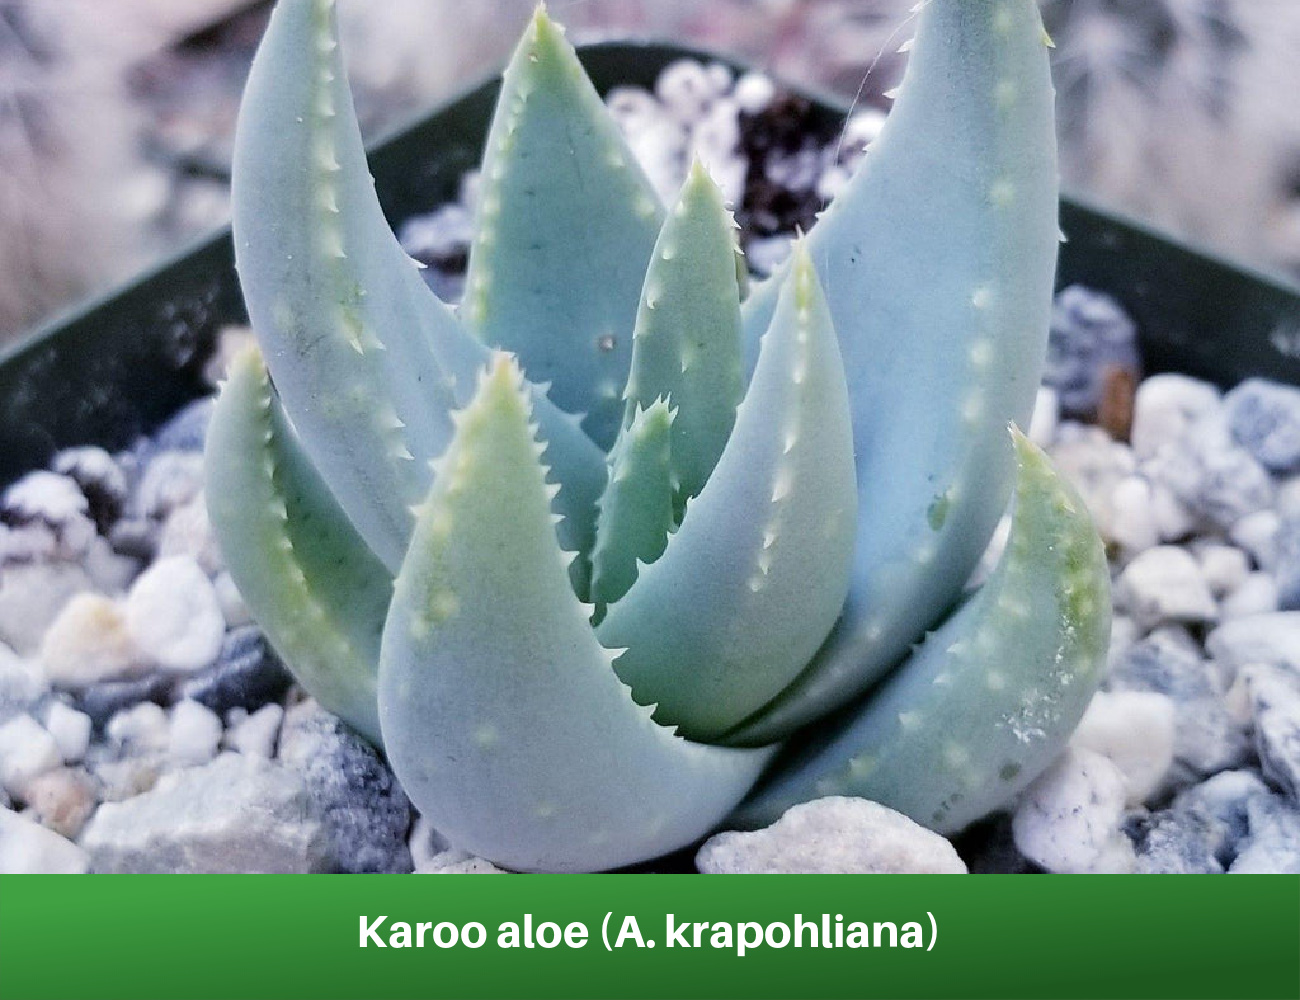 Karoo aloe (A. krapohliana)